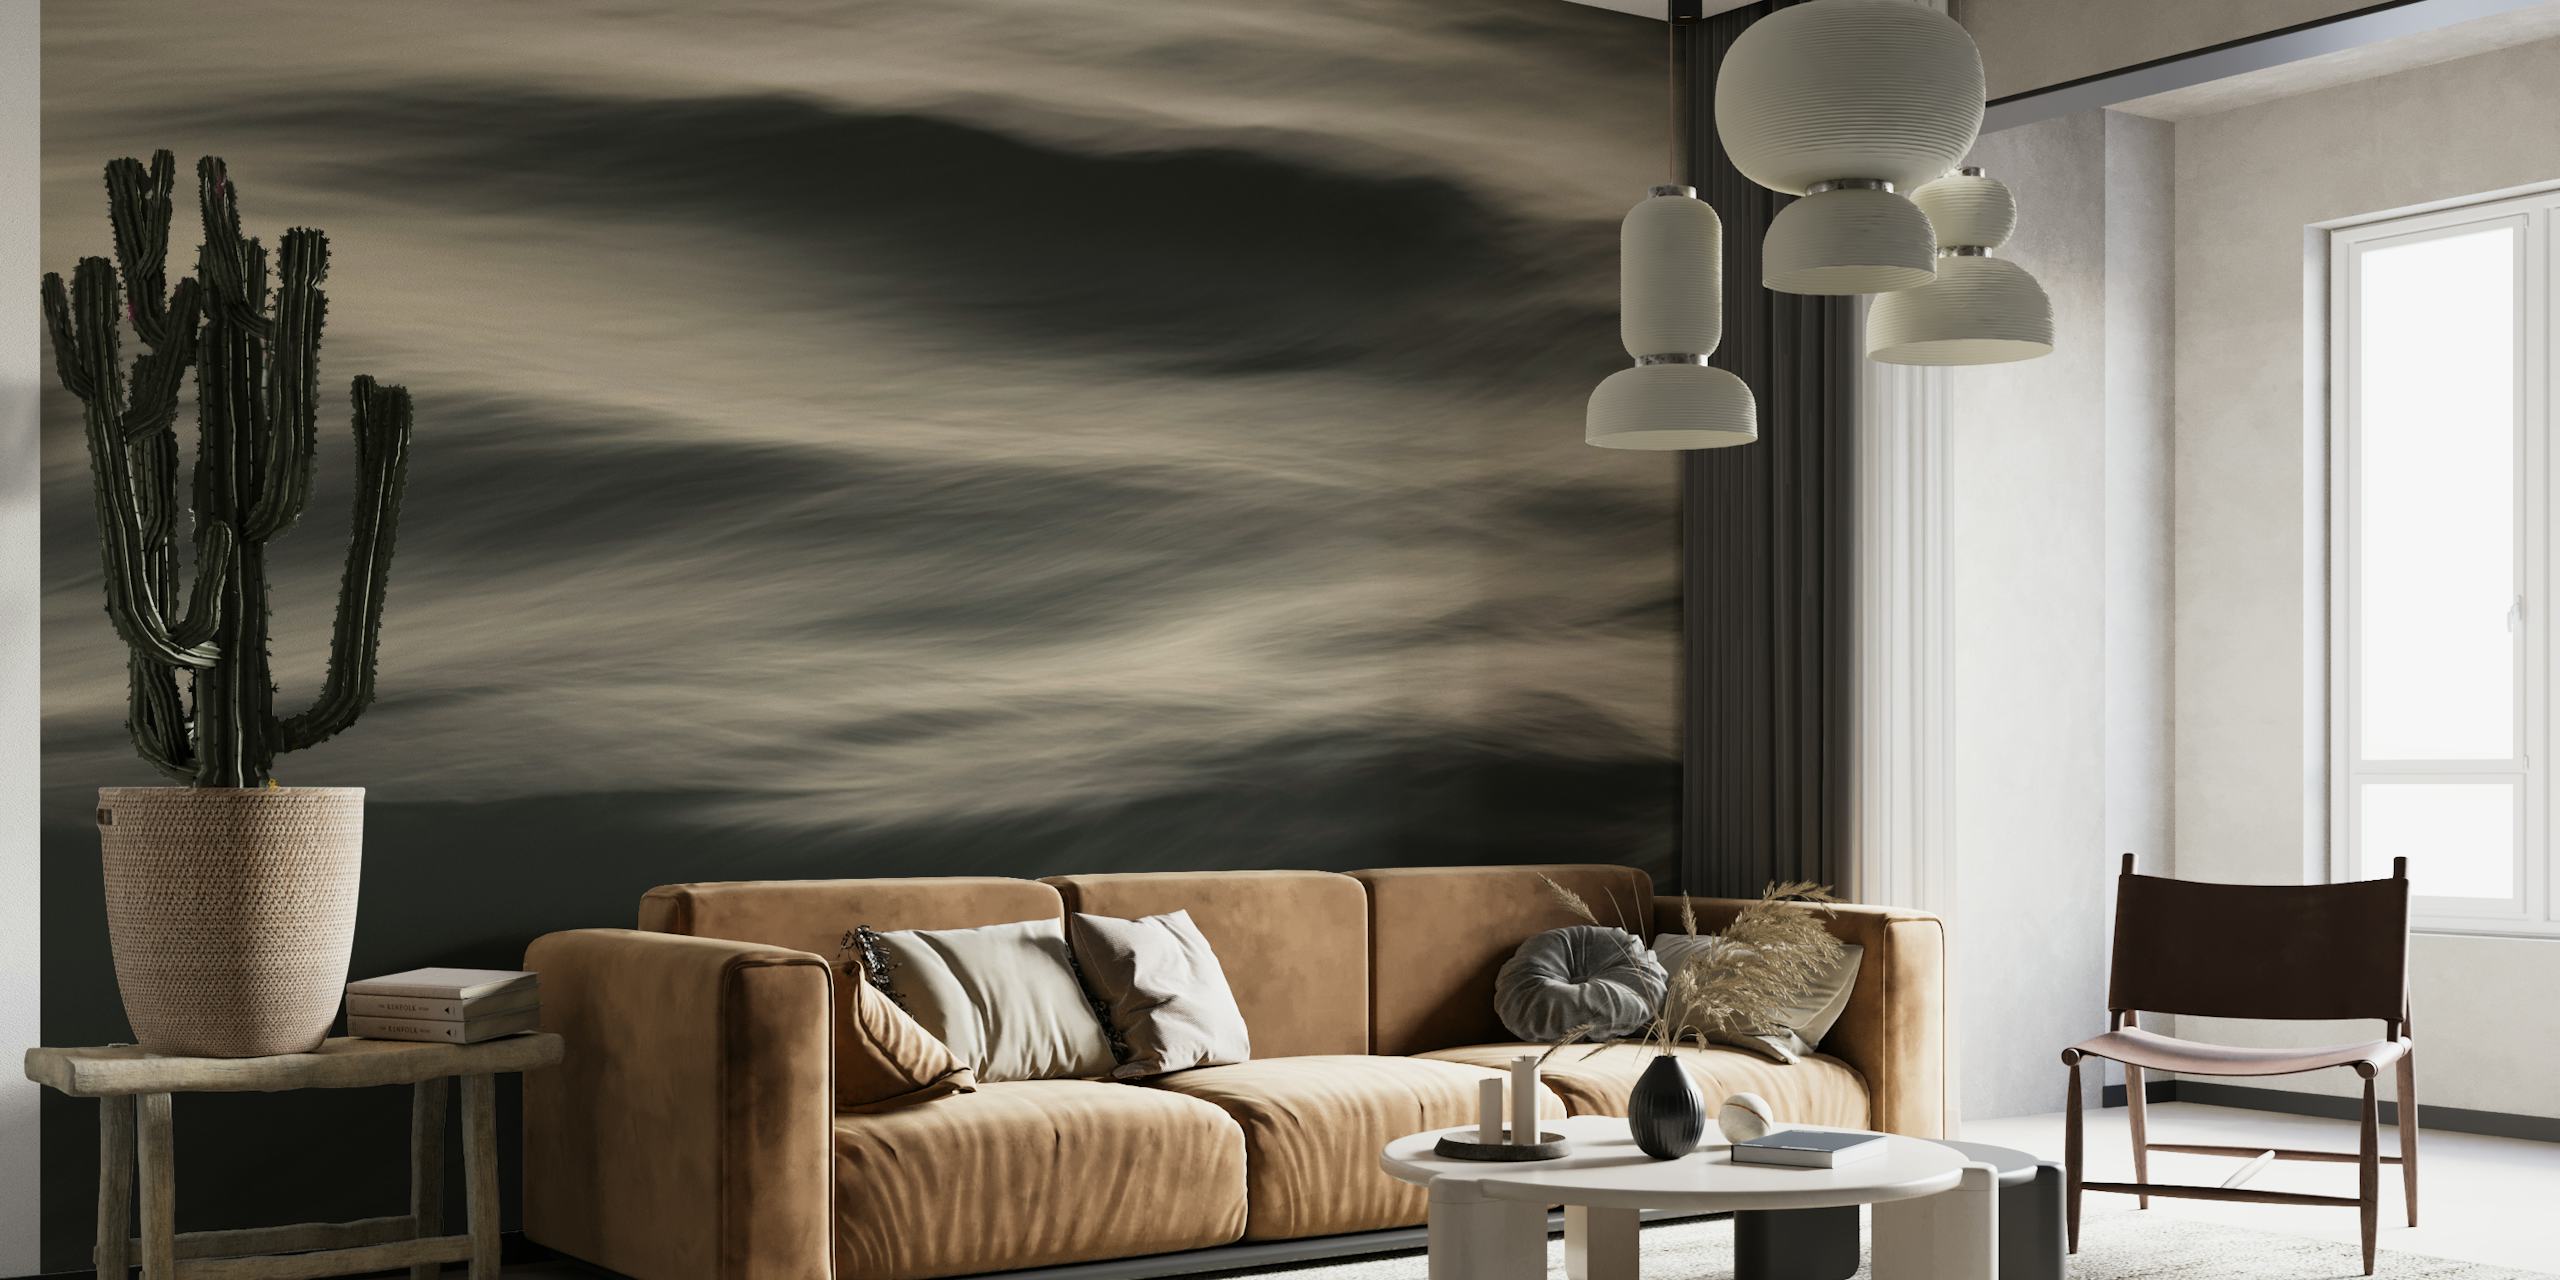 Een abstracte muurschildering met golven in grijstinten die de rustige beweging van de zee vastlegt